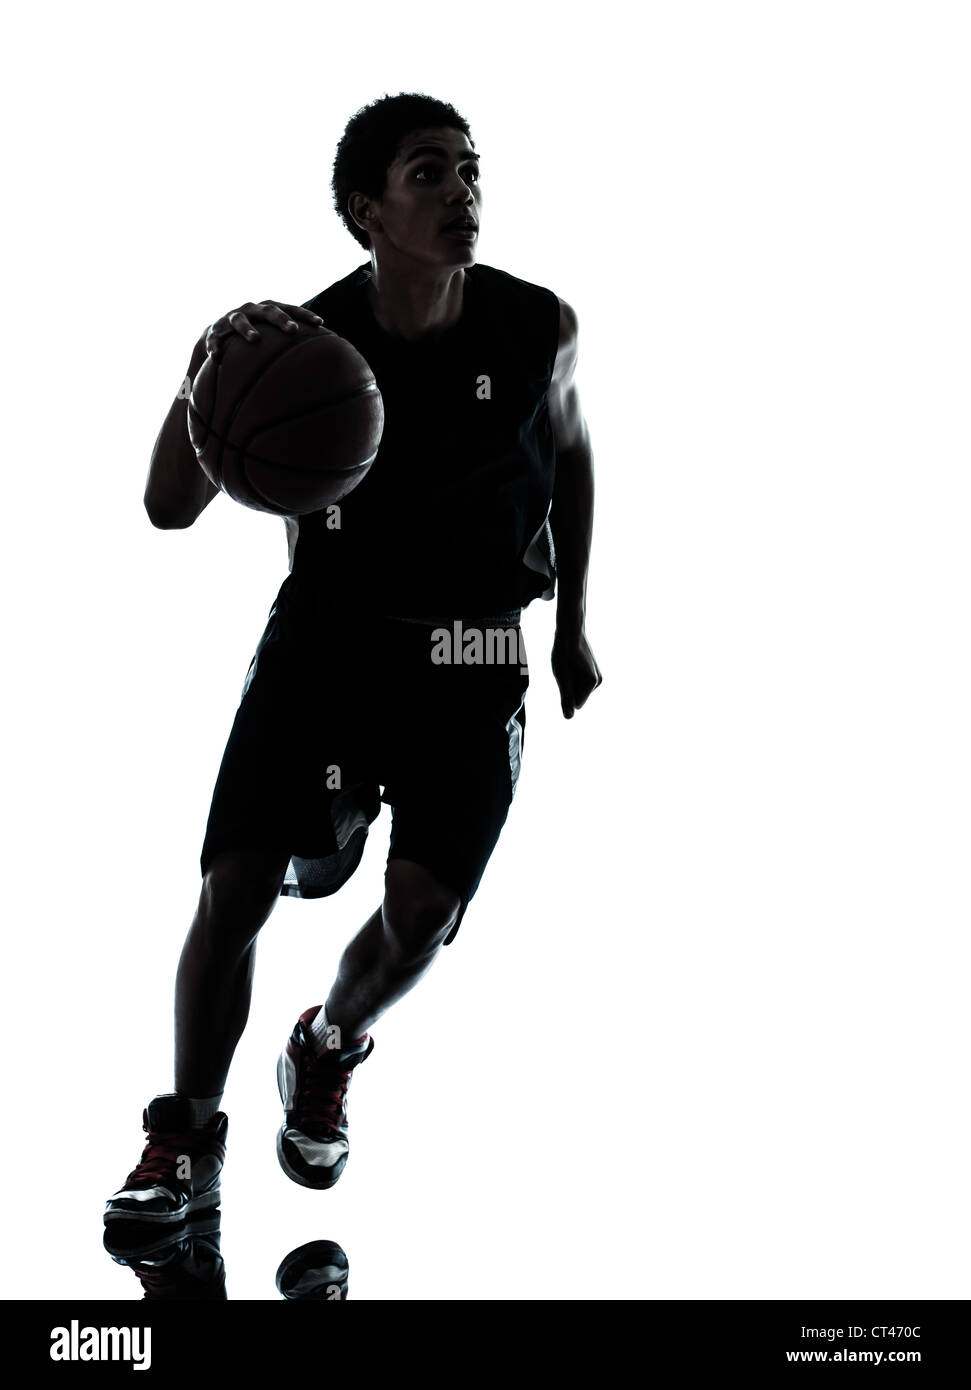 Un jeune homme basket-ball player silhouette en studio isolé sur fond blanc Banque D'Images